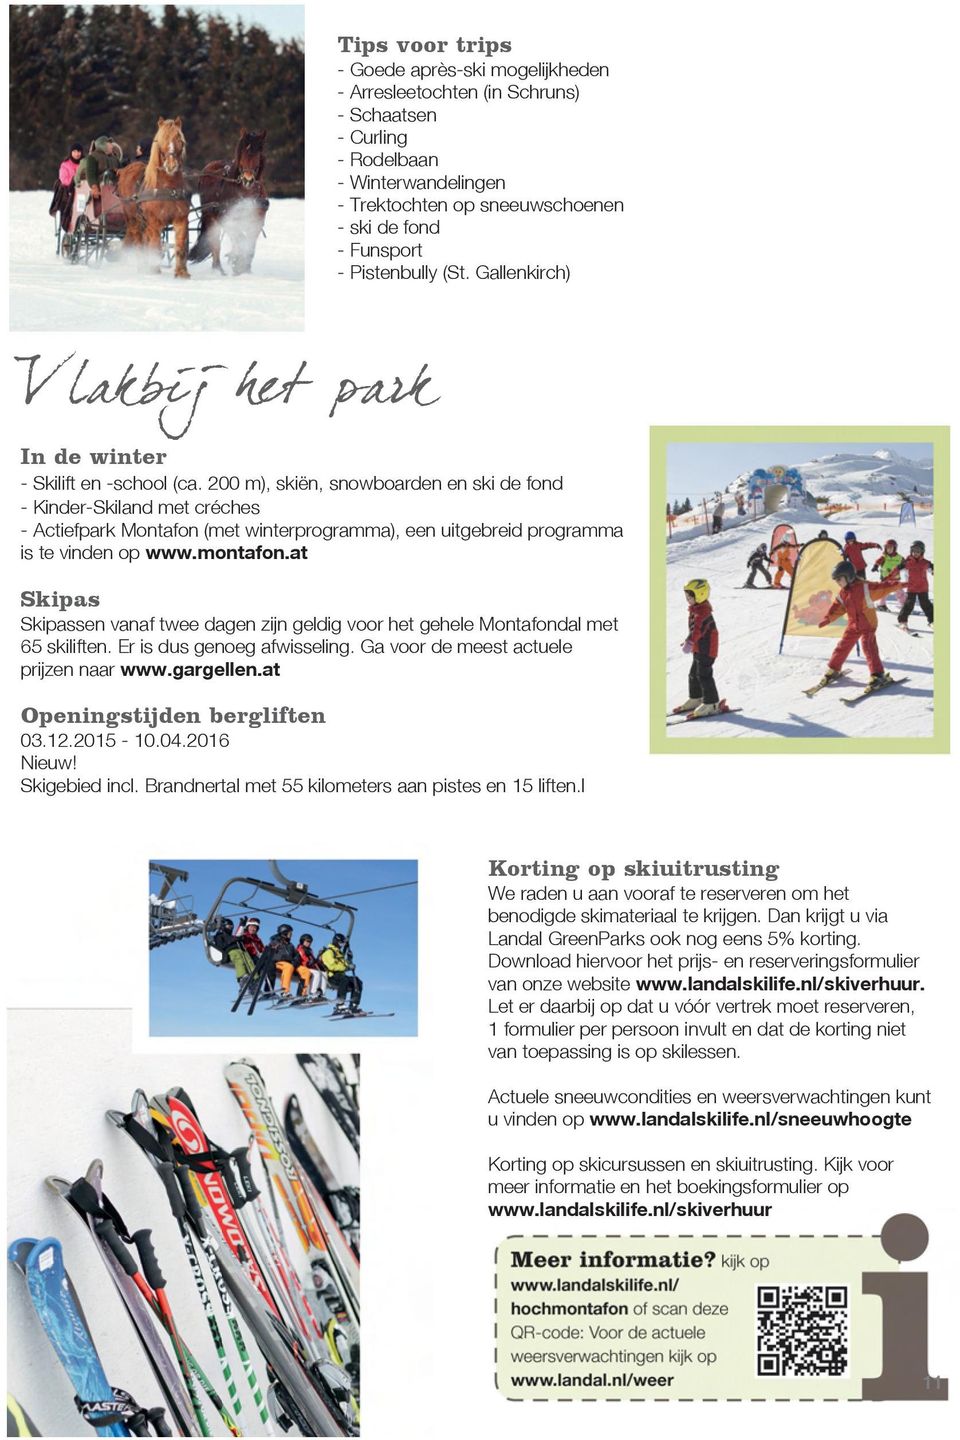 200 m), skiën, snowboarden en ski de fond - Kinder-Skiland met créches - Actiefpark Montafon (met winterprogramma), een uitgebreid programma is te vinden op www.montafon.